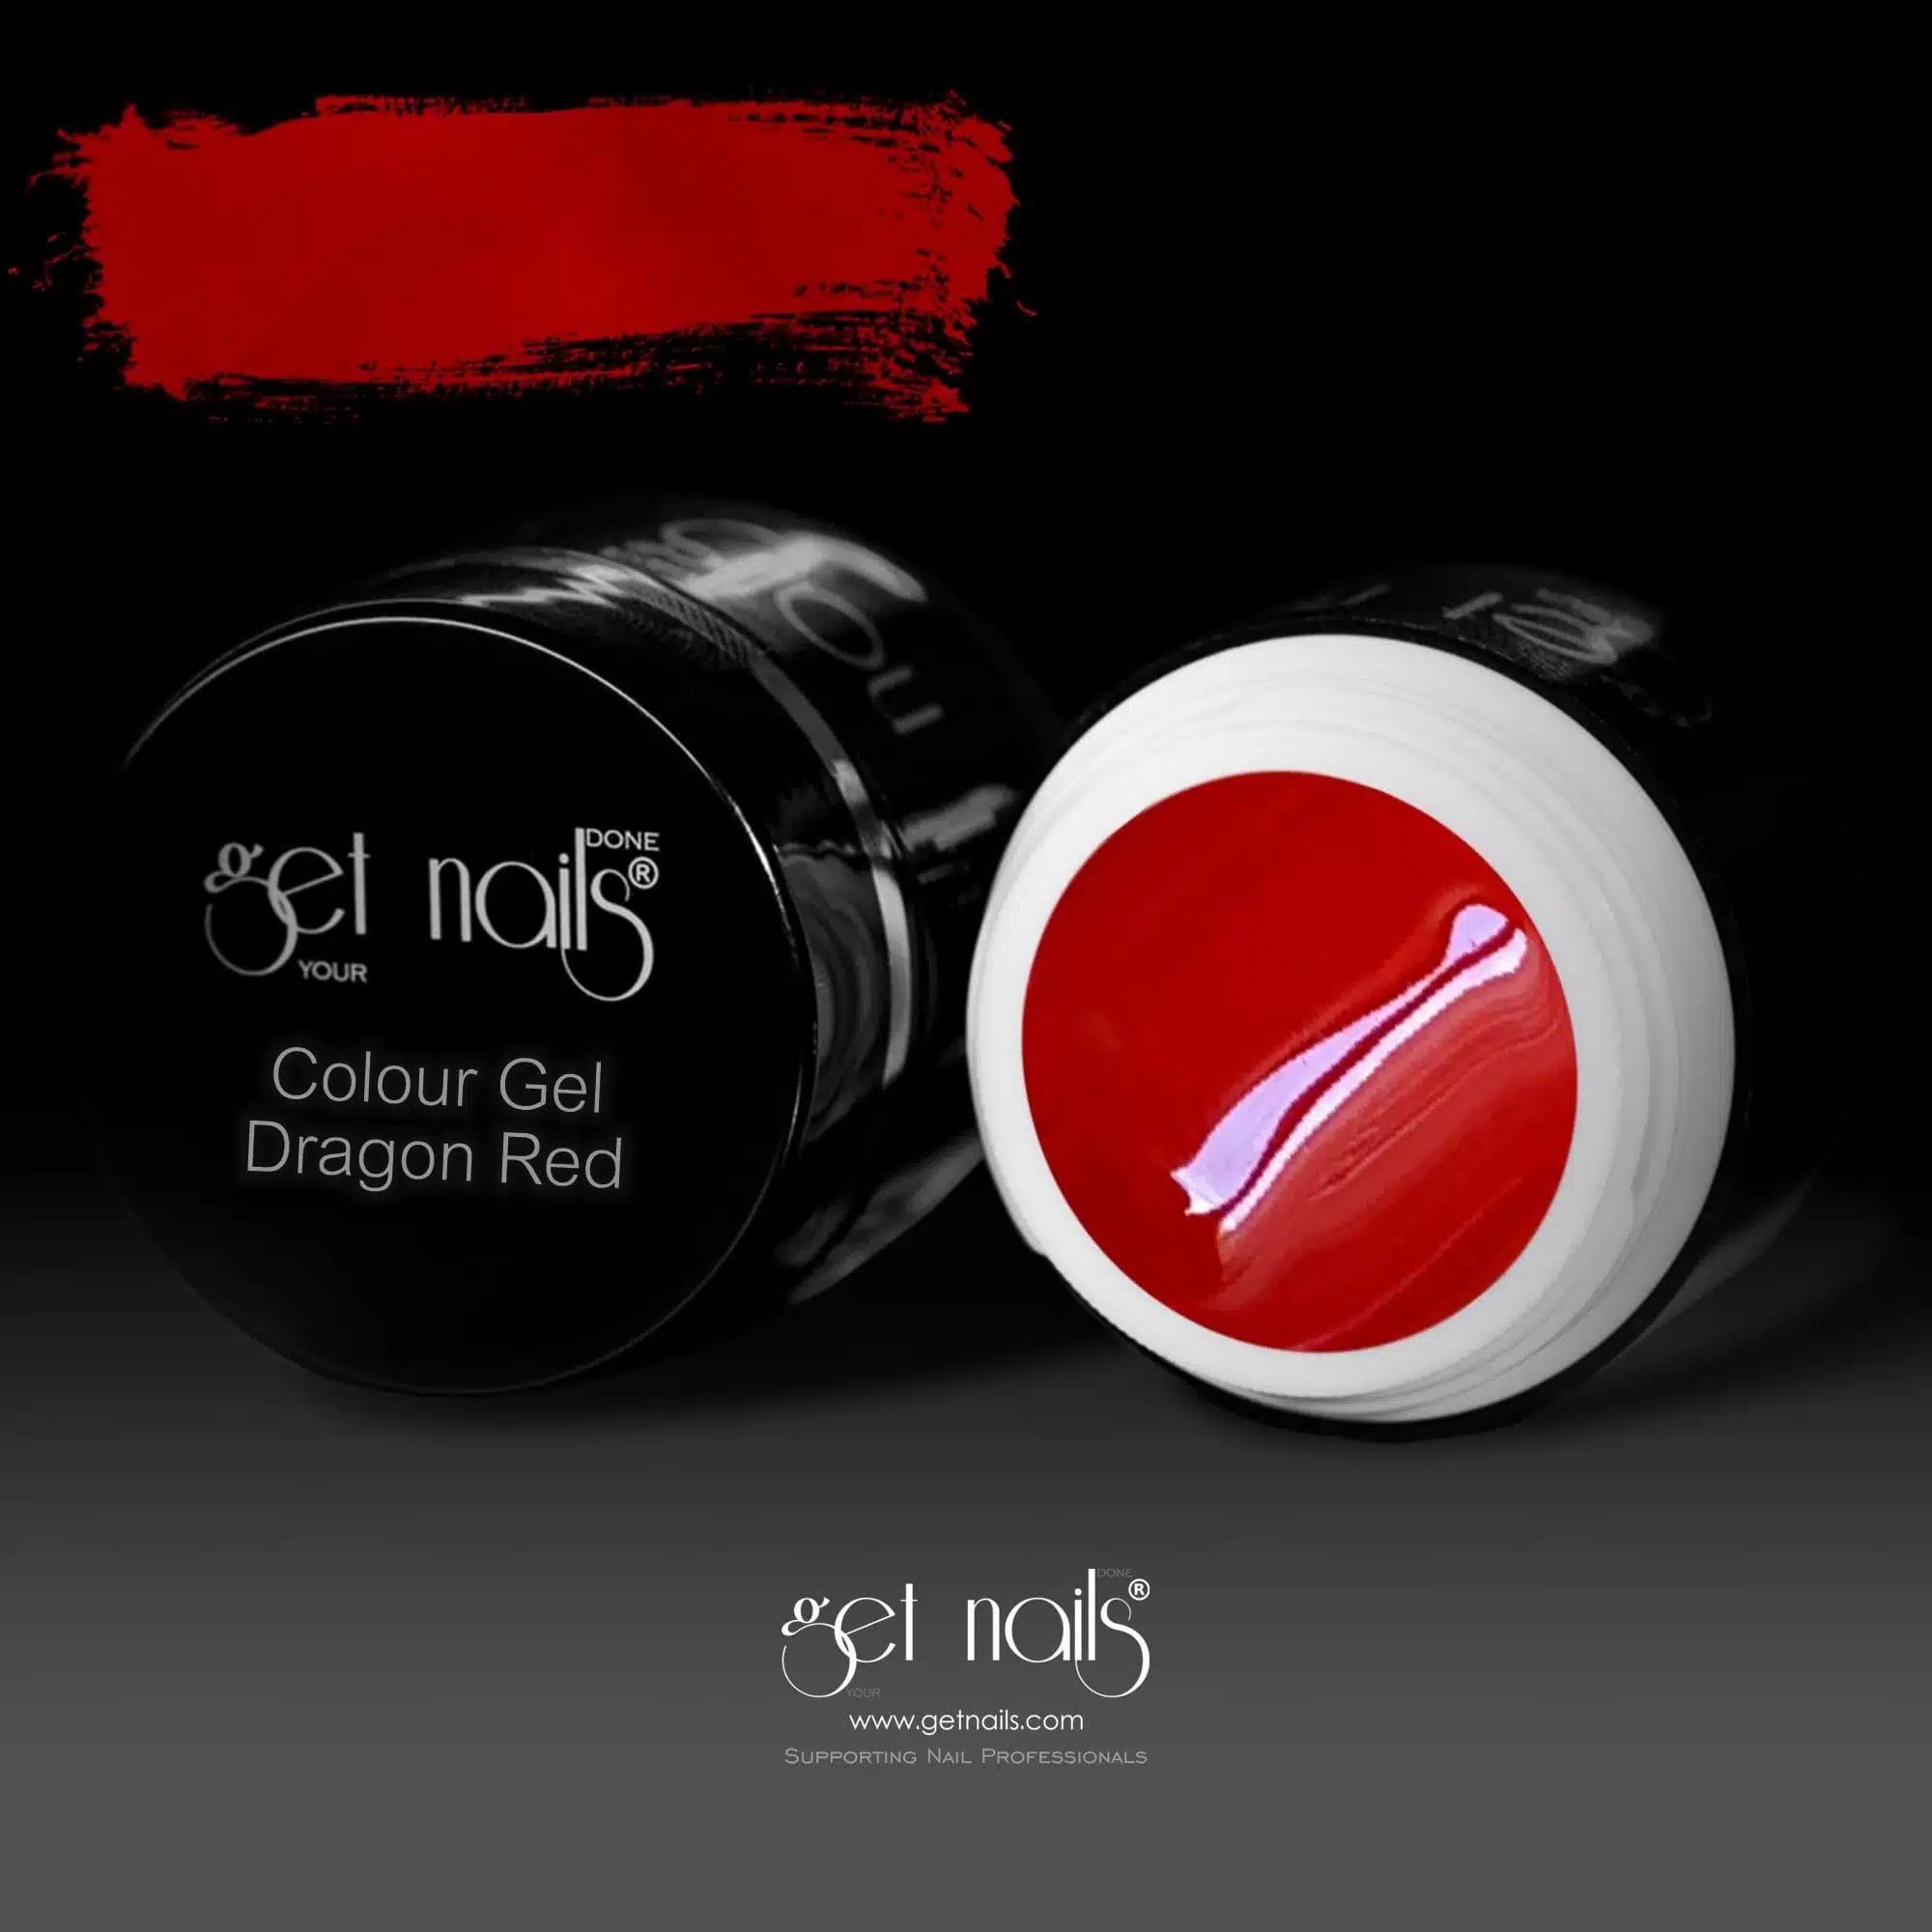 Get Nails Austria - Цветной гель Dragon Red 5g